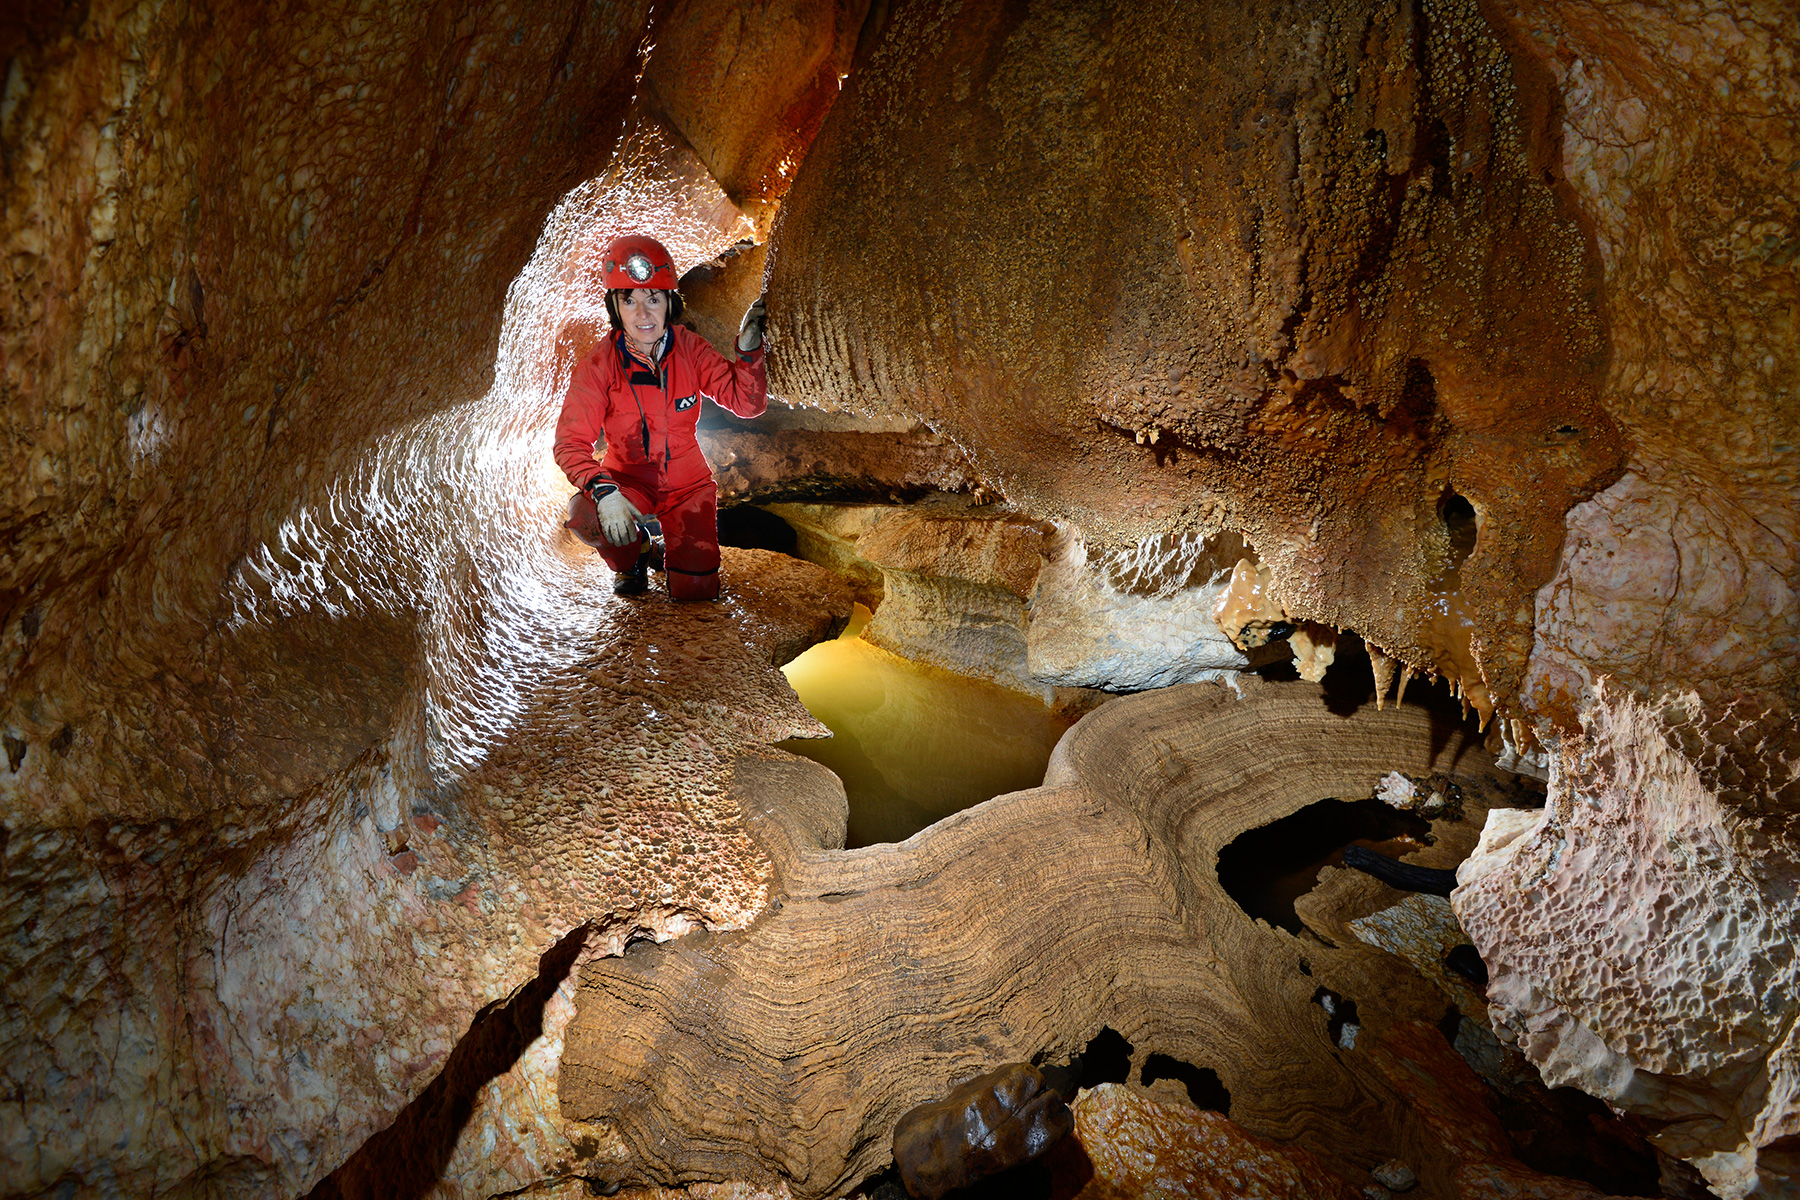 Tuglow Cave (Jenolan Karst Conservation Reserve, Australie) - Rivière avec barrière de calcite